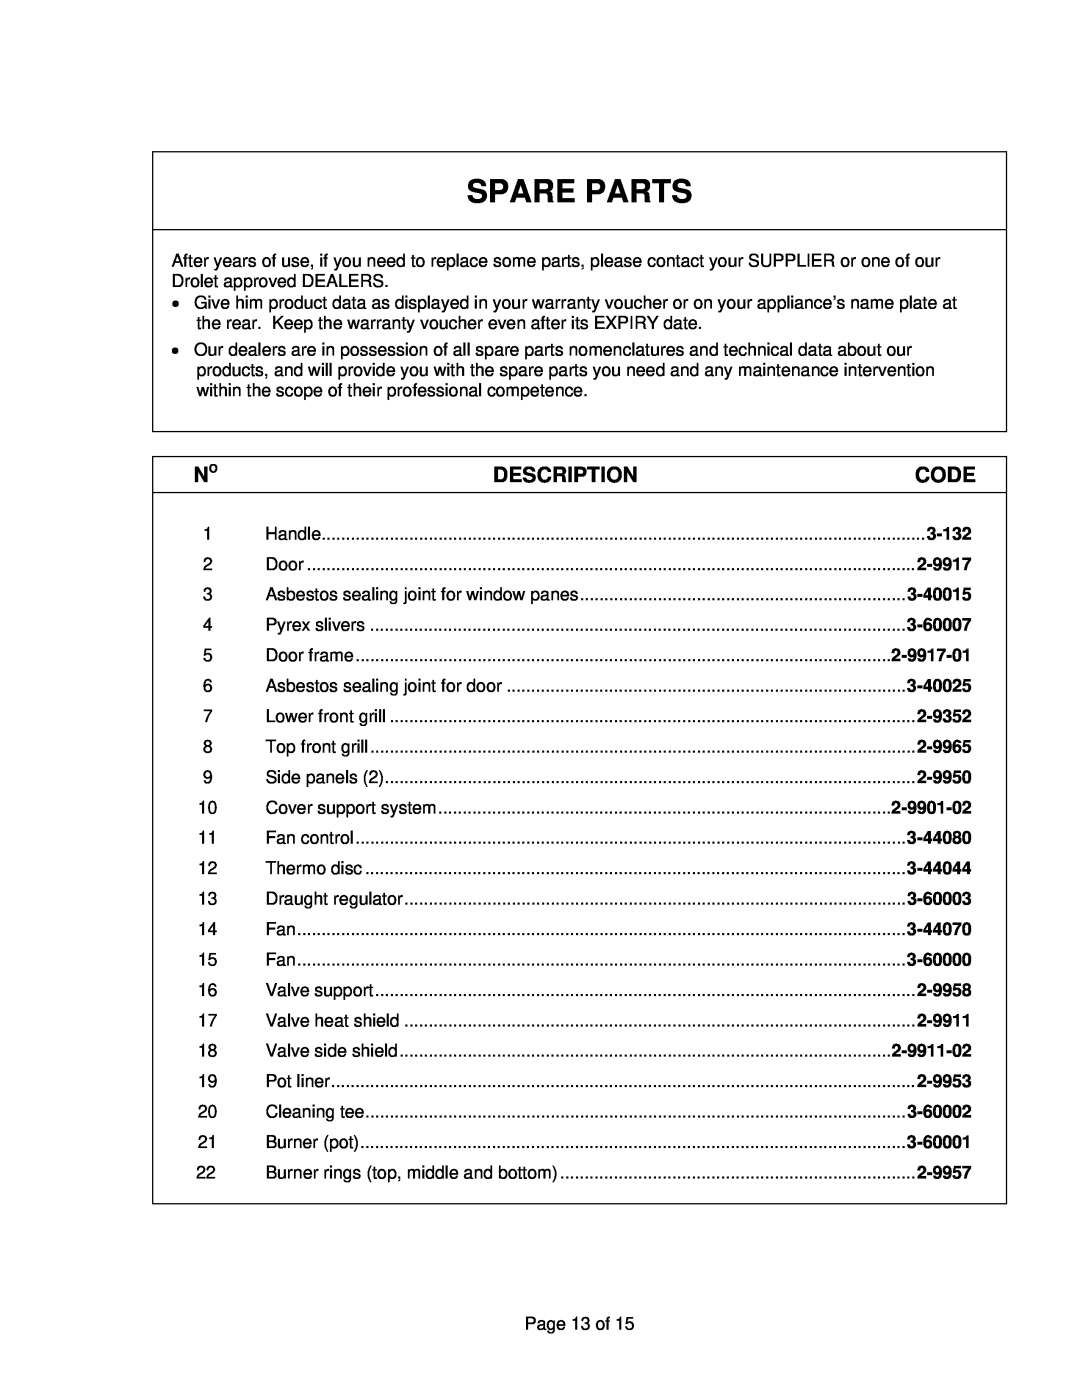 Drolet ALASKA 2000 manual Spare Parts, Description, Code 